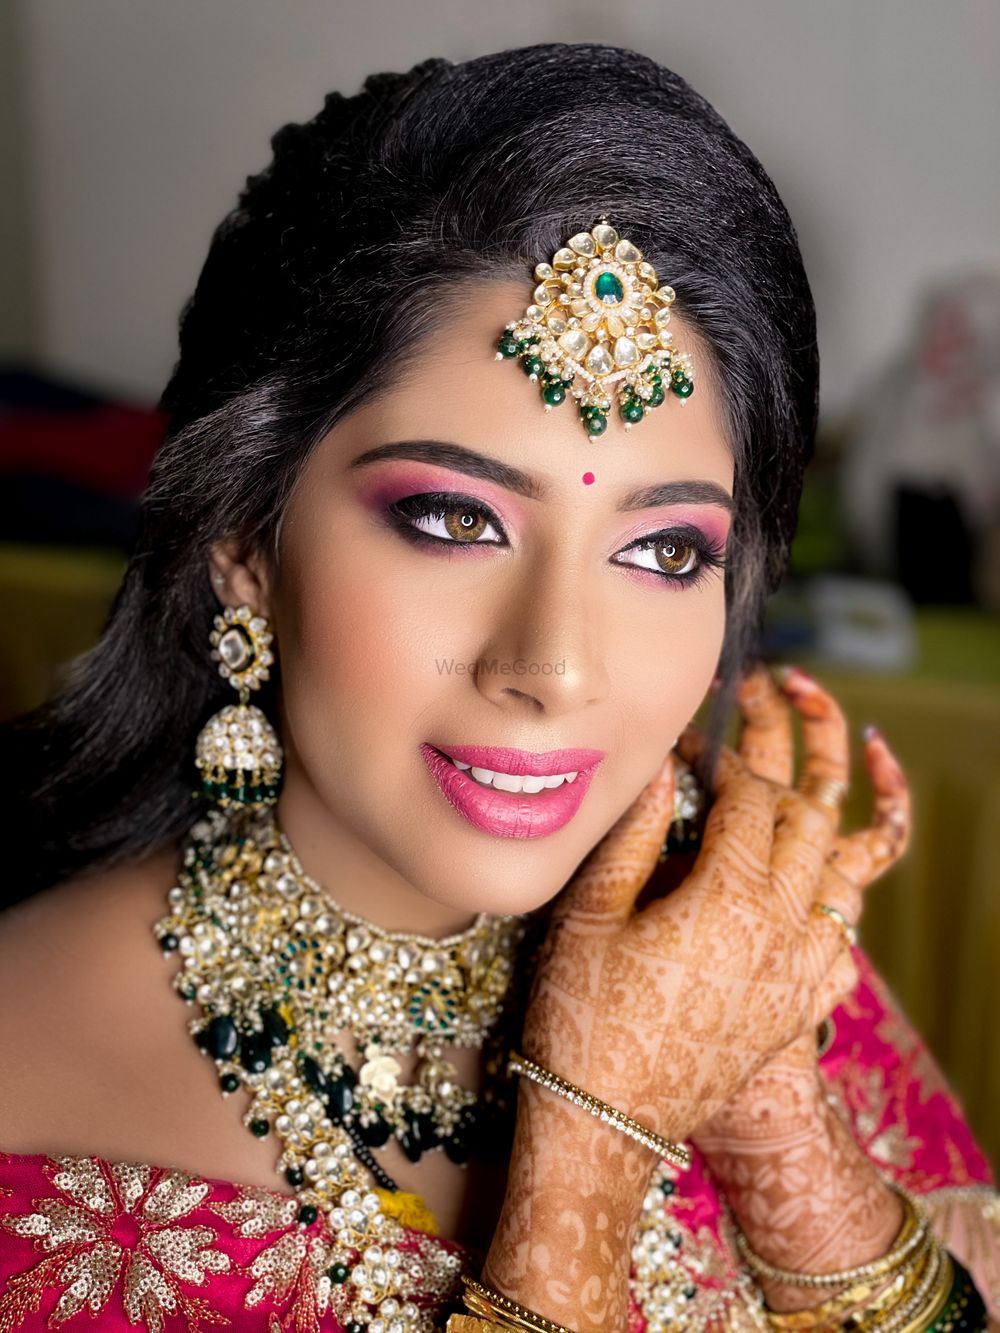 Photo By Makeup by Chetna Mallya - Bridal Makeup